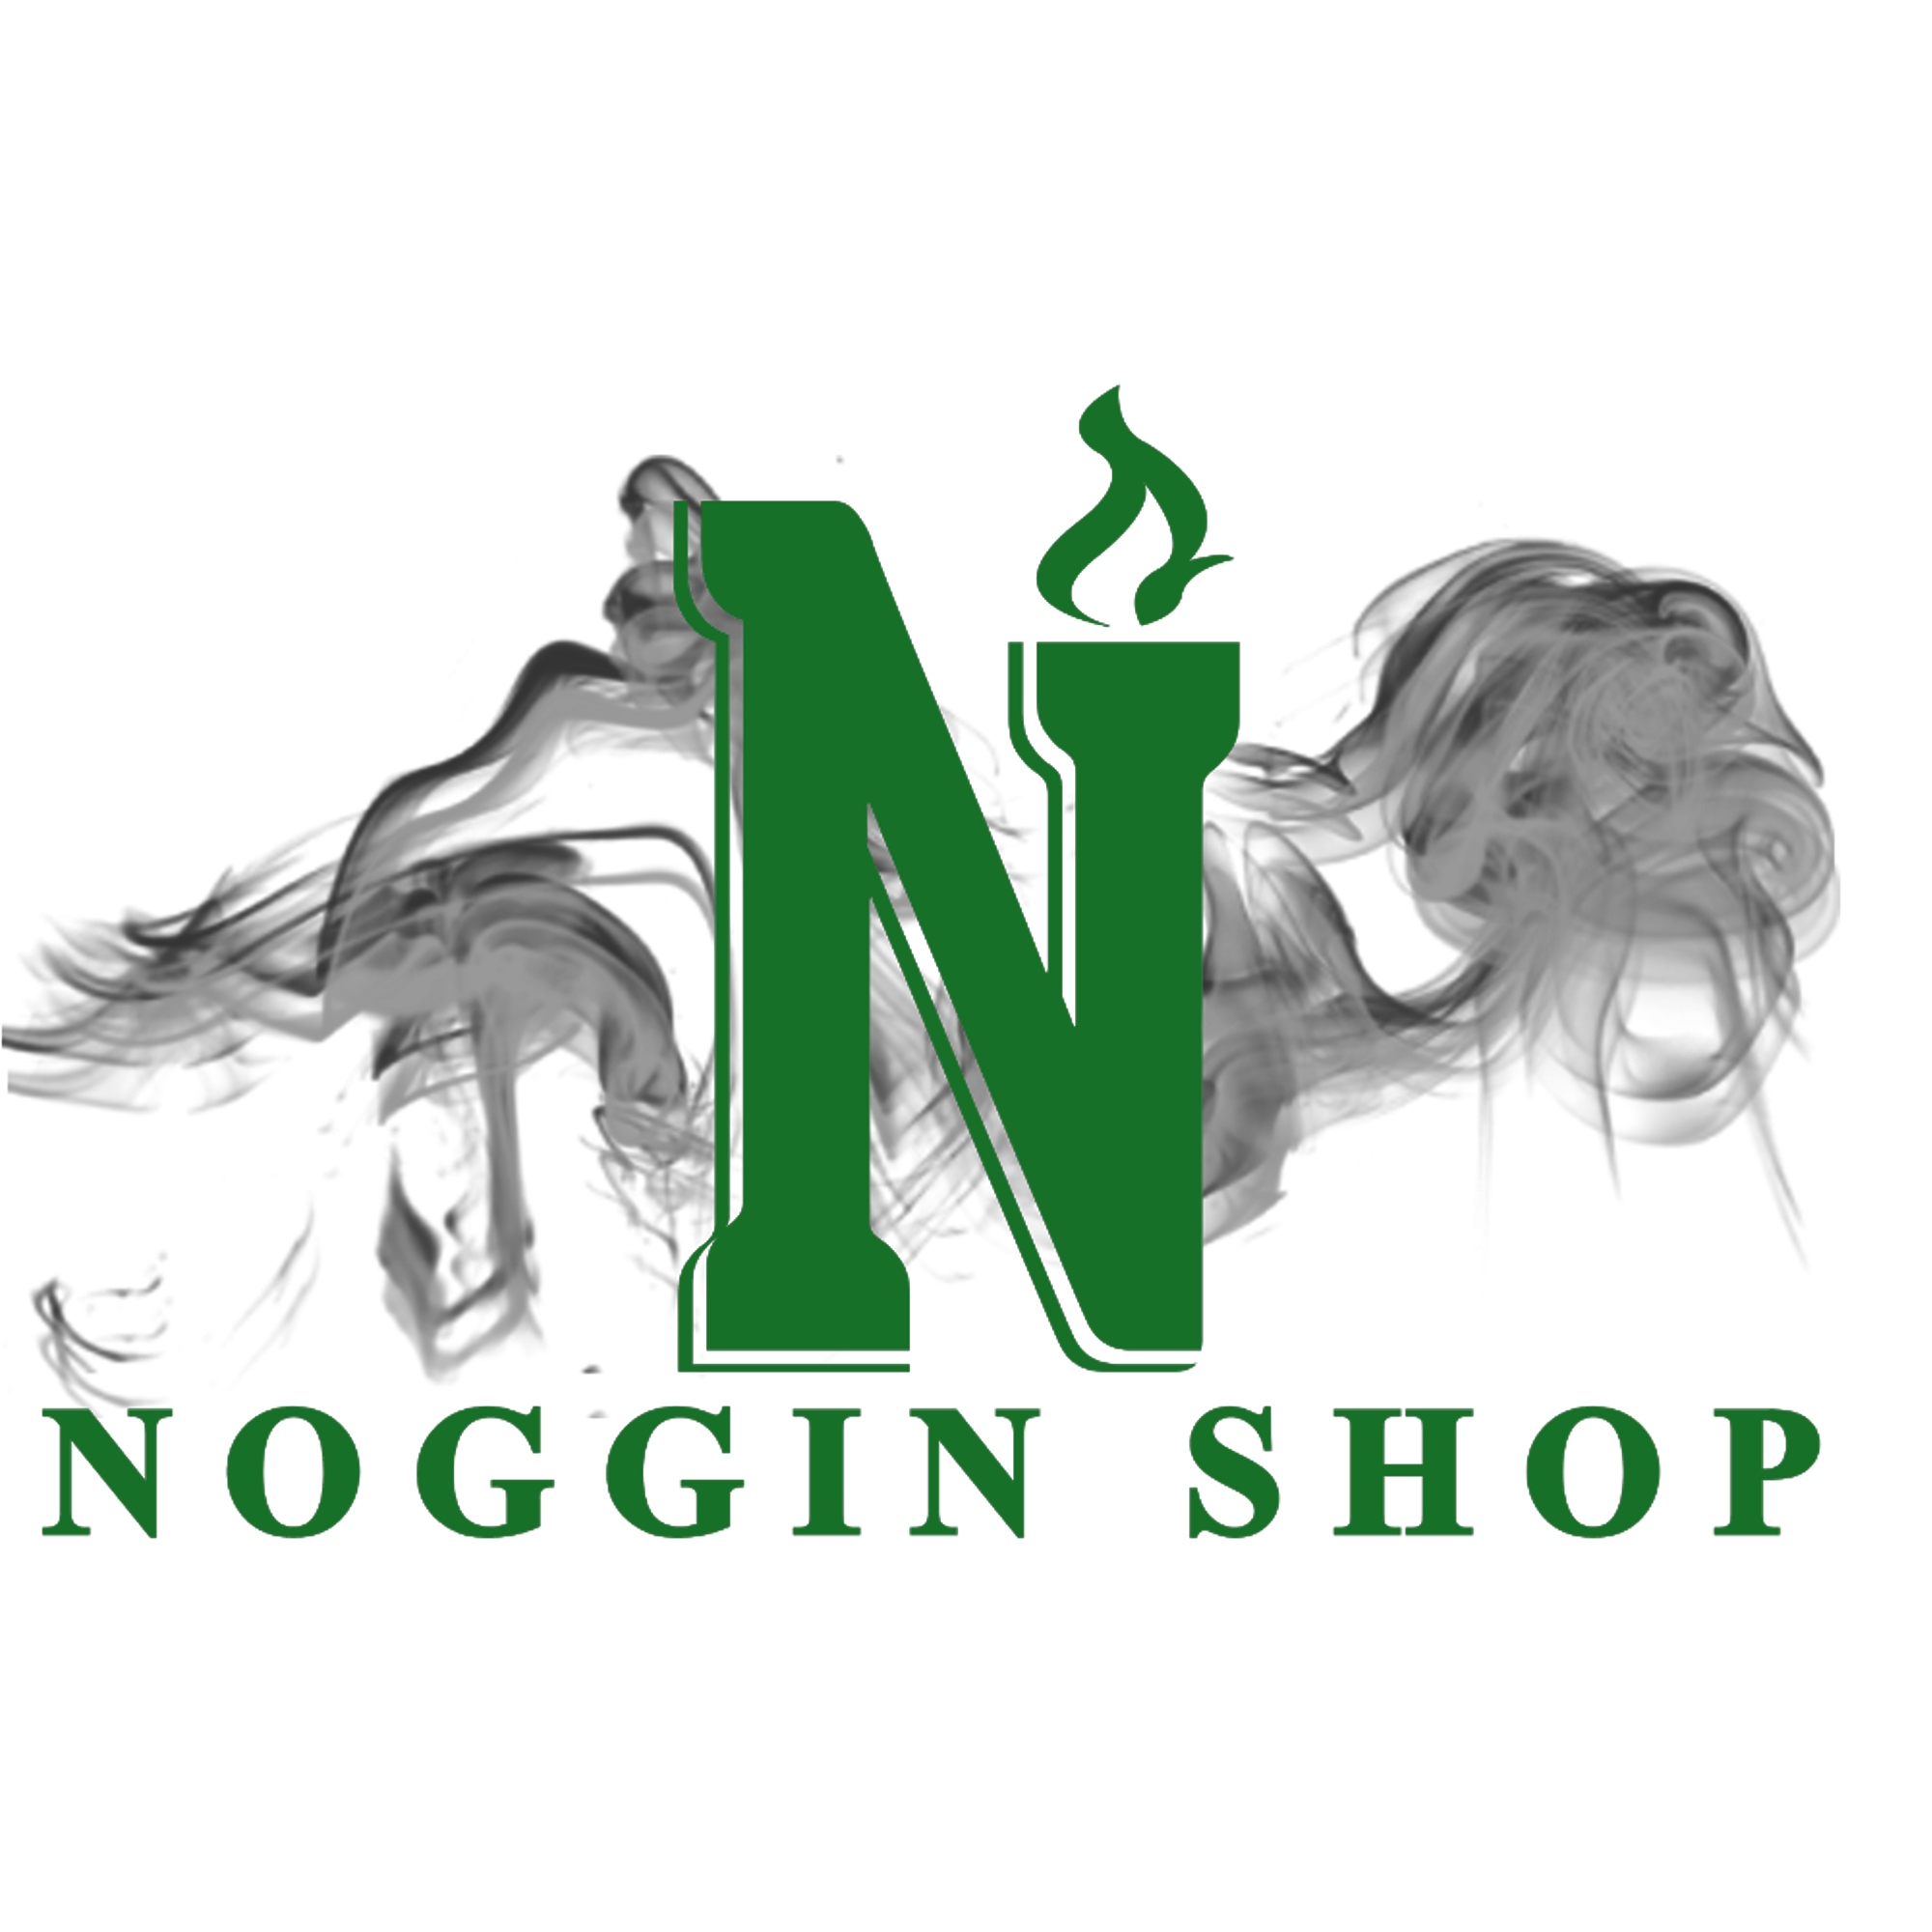 Noggin Shop